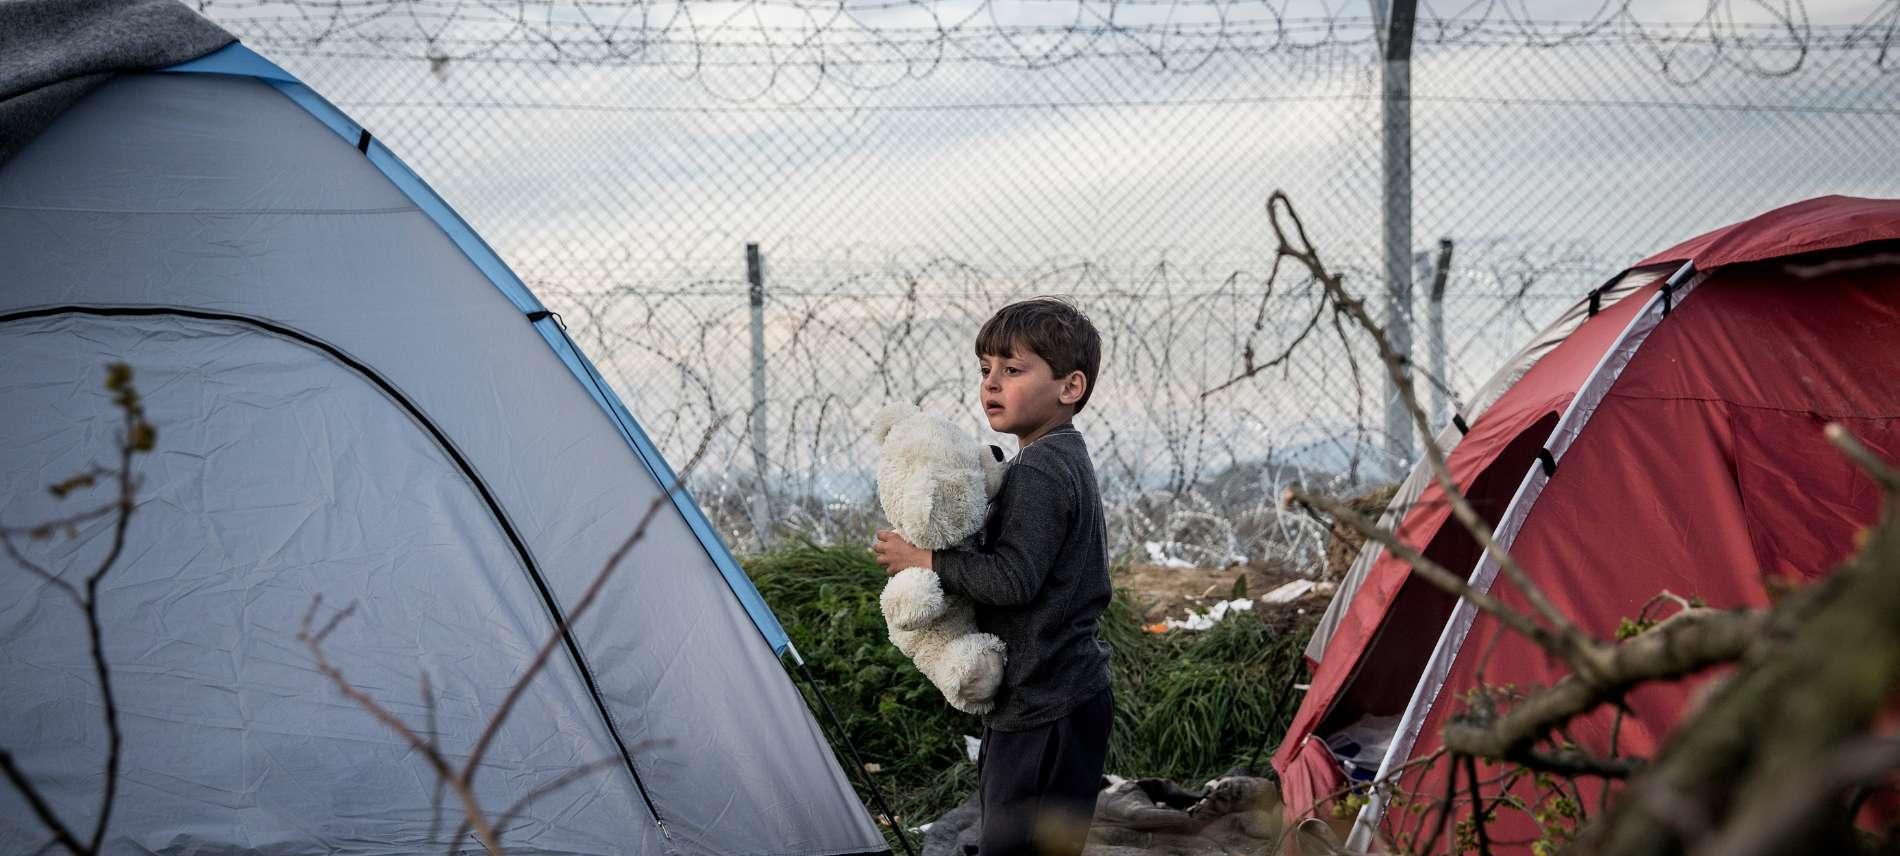 Kind zwischen Zelten am Grenzzaun zwischen Griechenland und Mazedonien (FYROM)